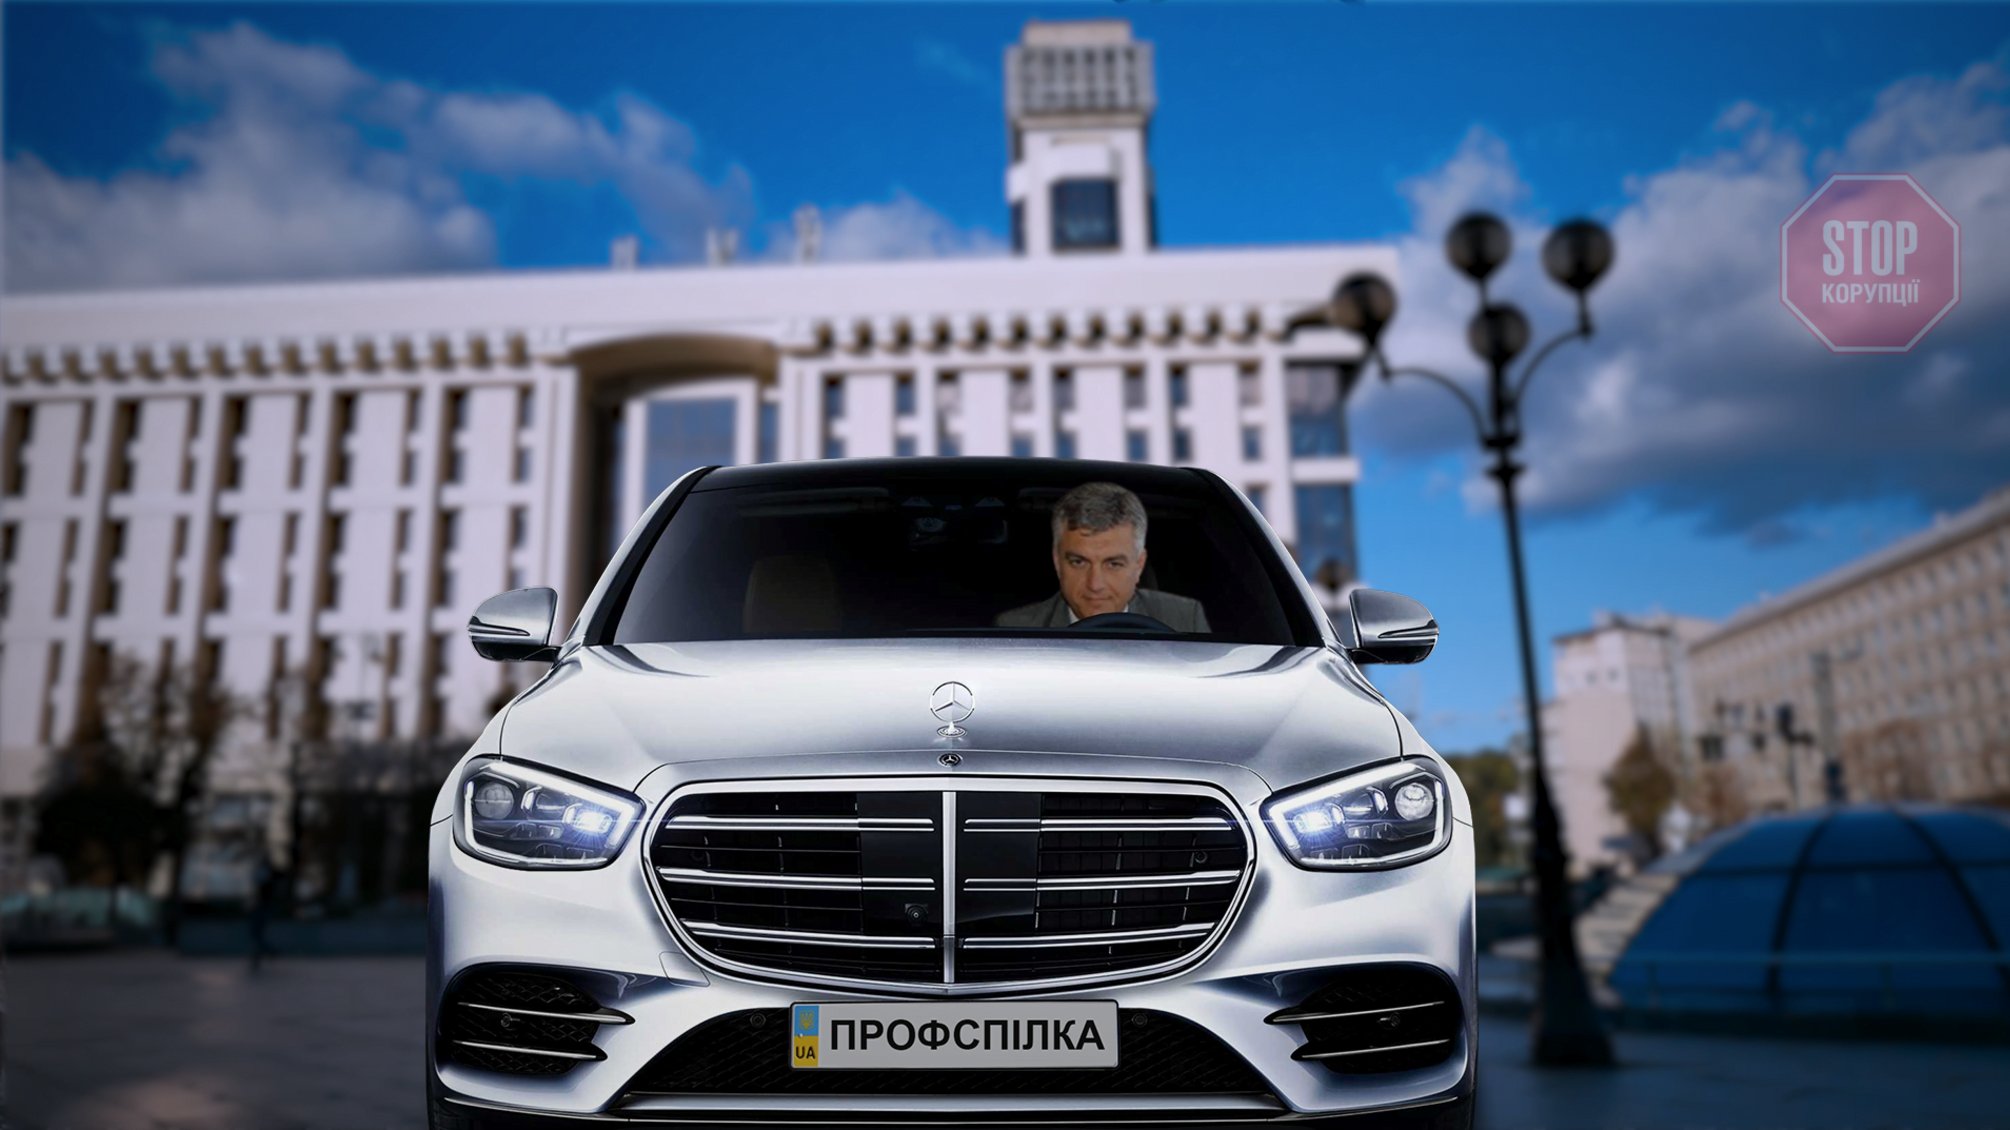 Глава профсоюза госутя Украины приобрел представительский автомобиль более чем за миллион гривен